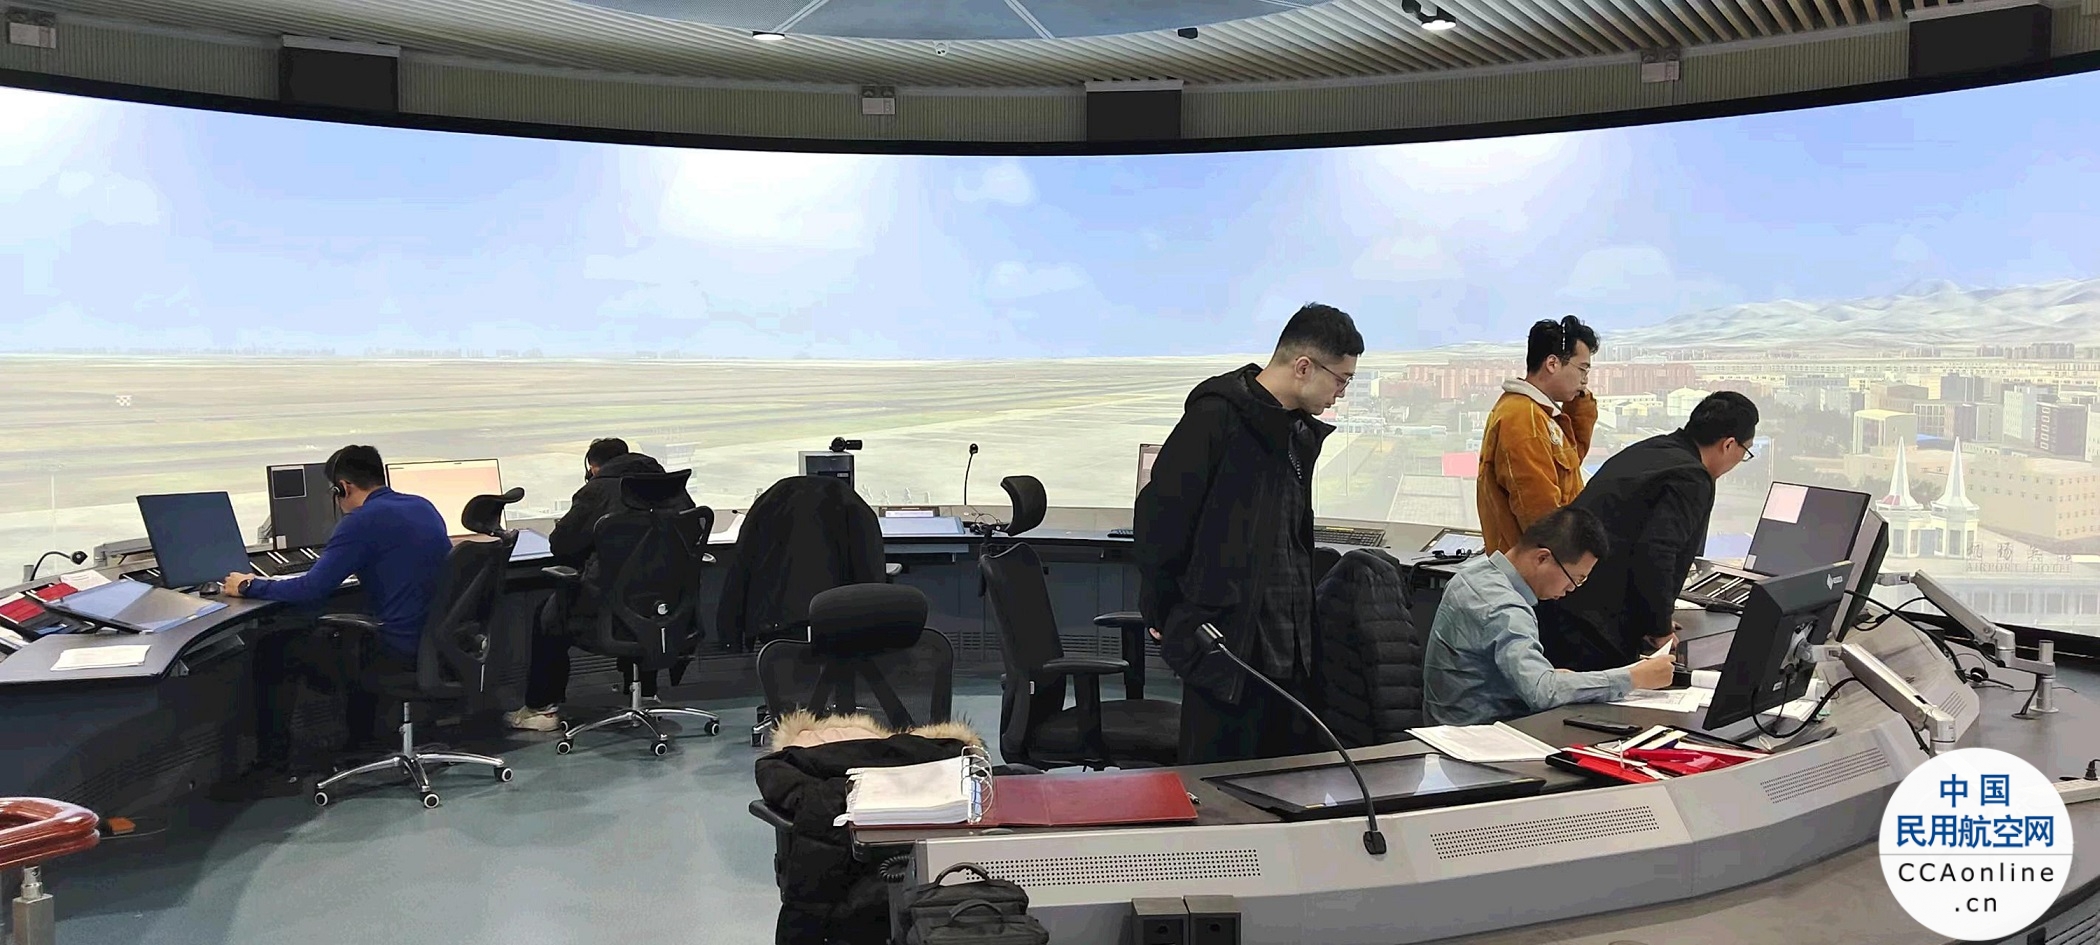 新疆空管局开展管制岗位复训考核暨资质能力排查工作